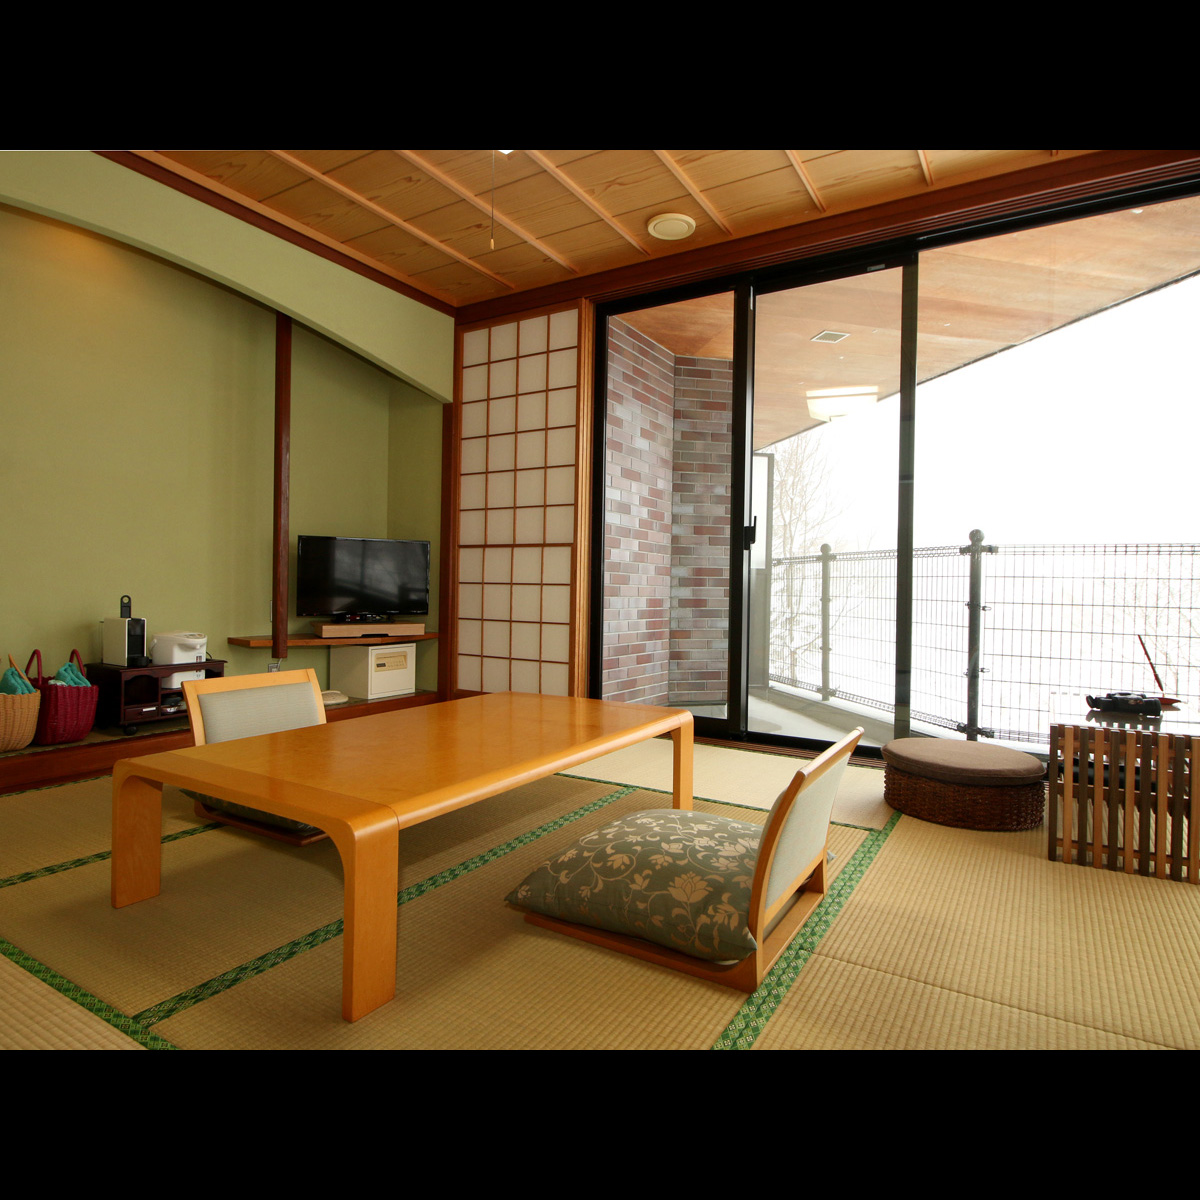 【特別室】ゆったりとした和室と独立した洋室のお部屋は贅沢な空間